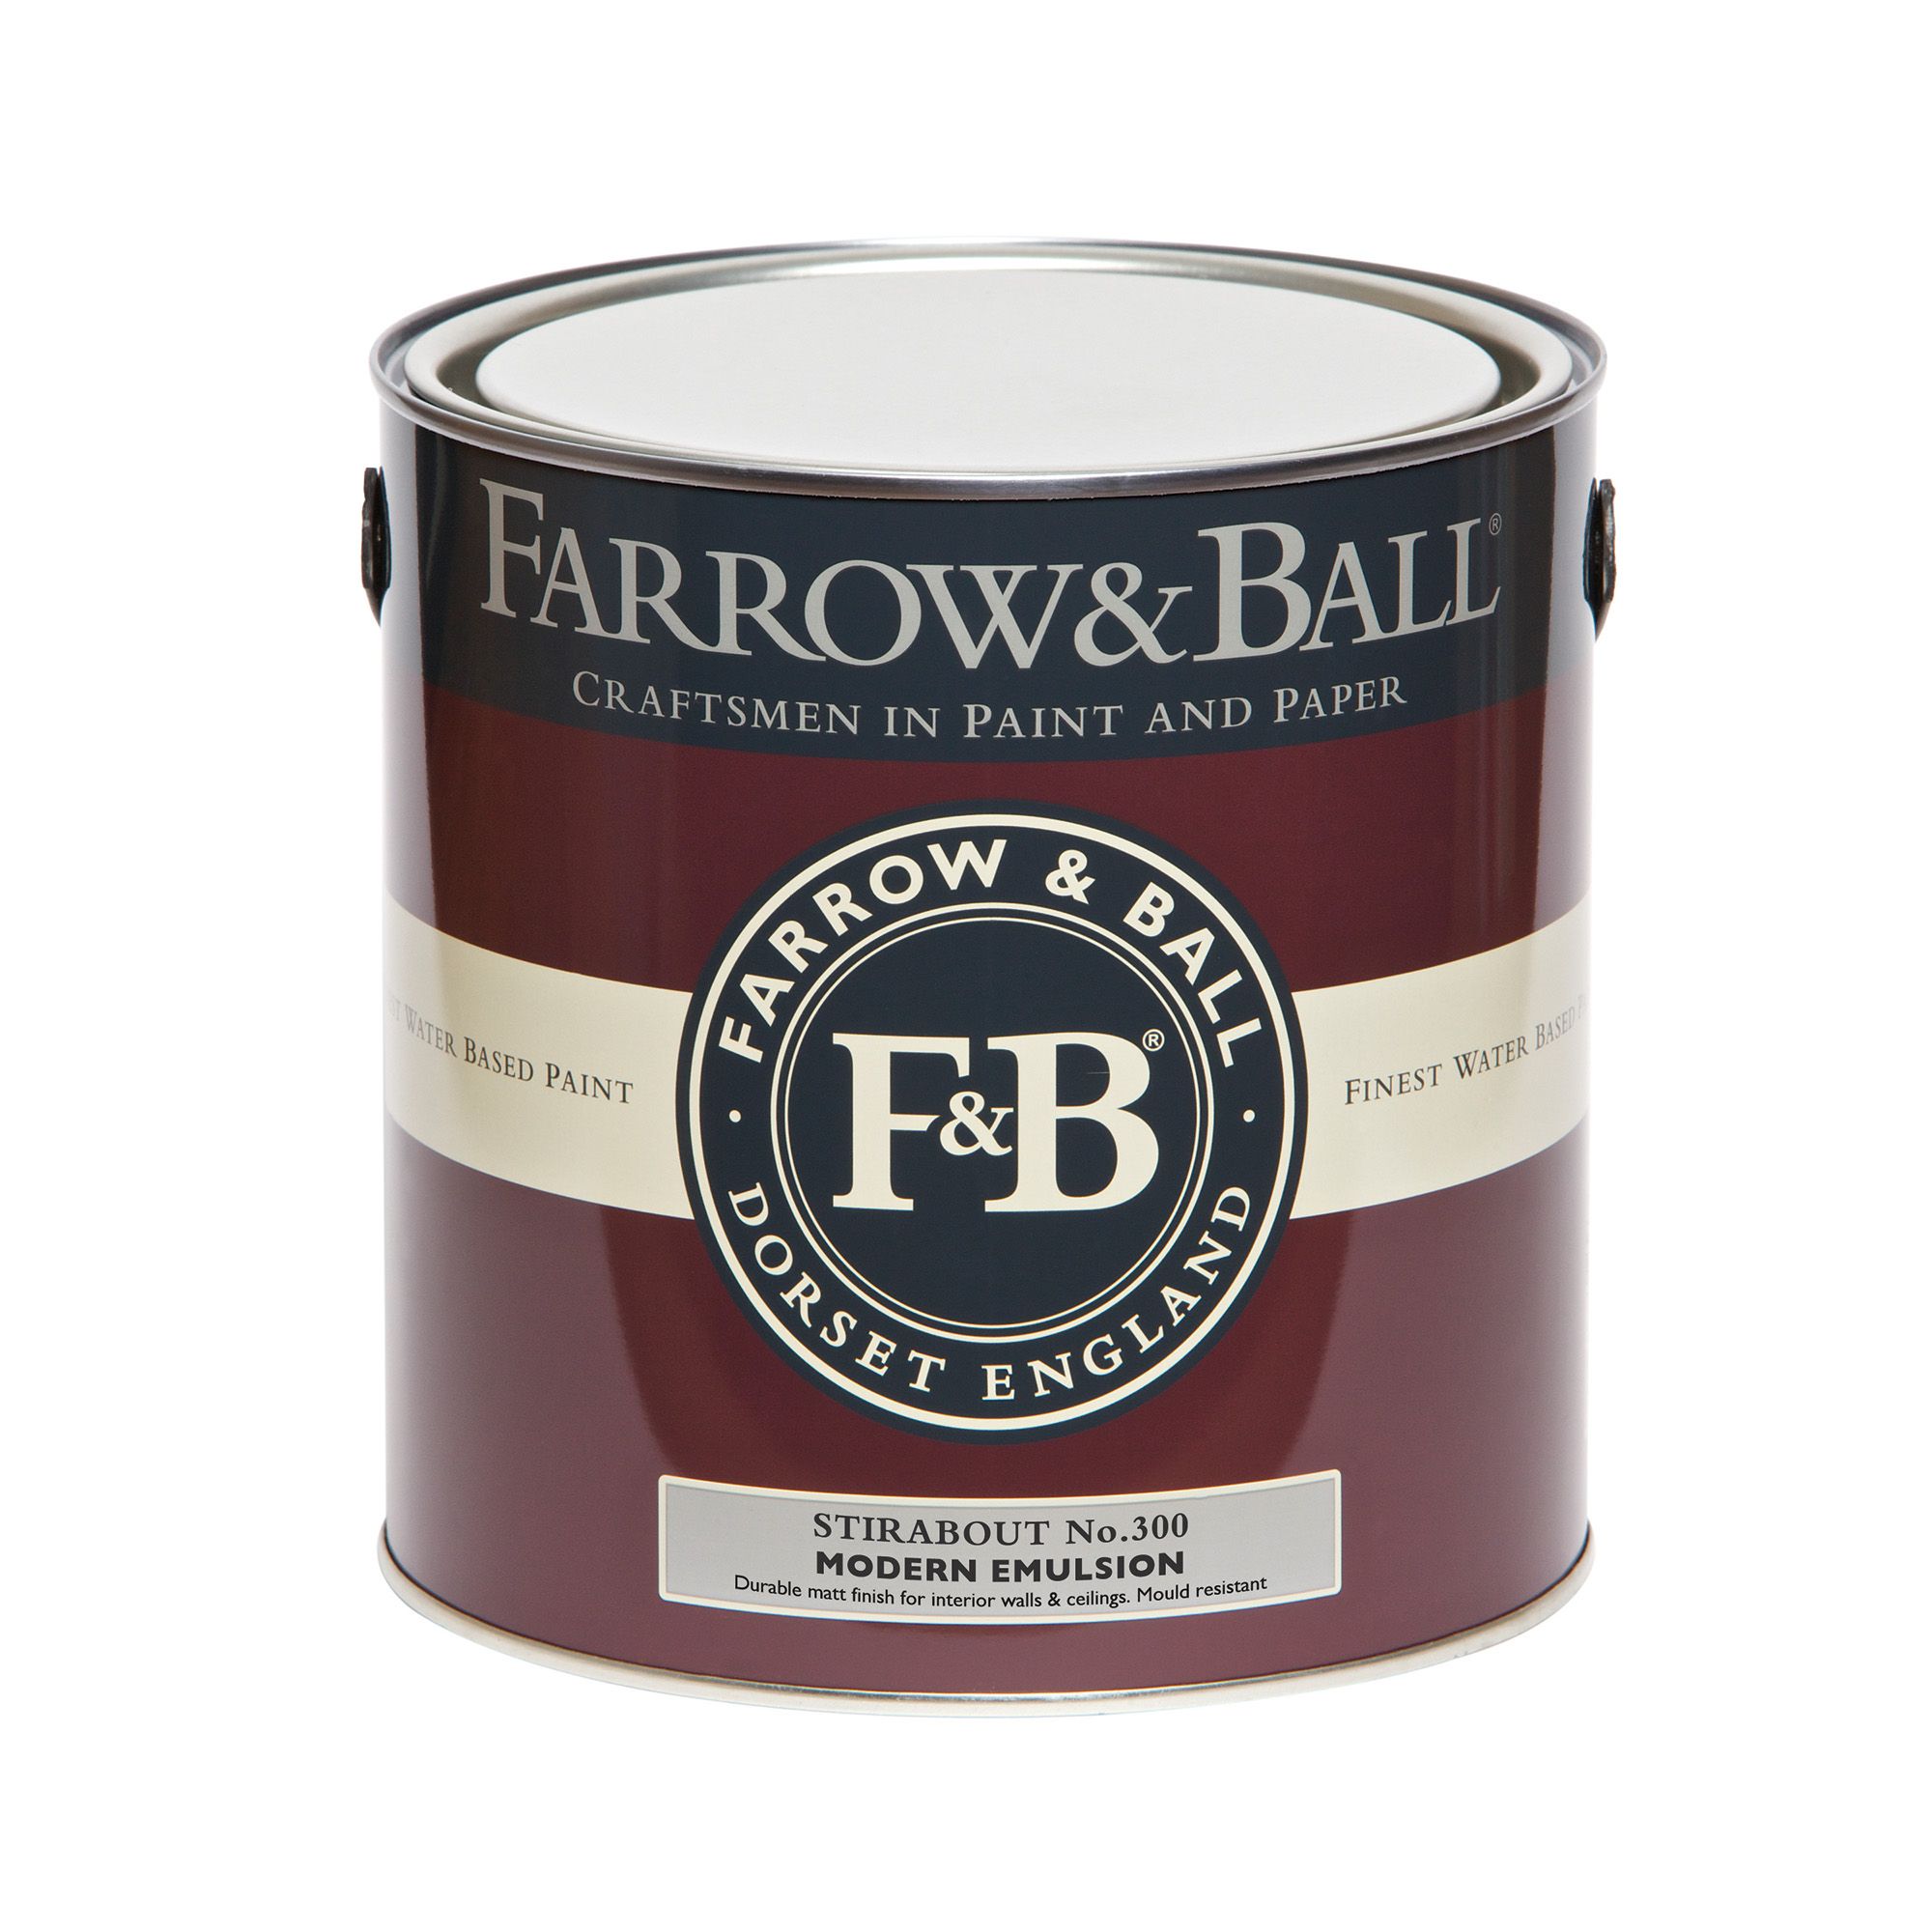 Farrow & Ball Modern Stirabout No.300 Matt Emulsion paint, 2.5L